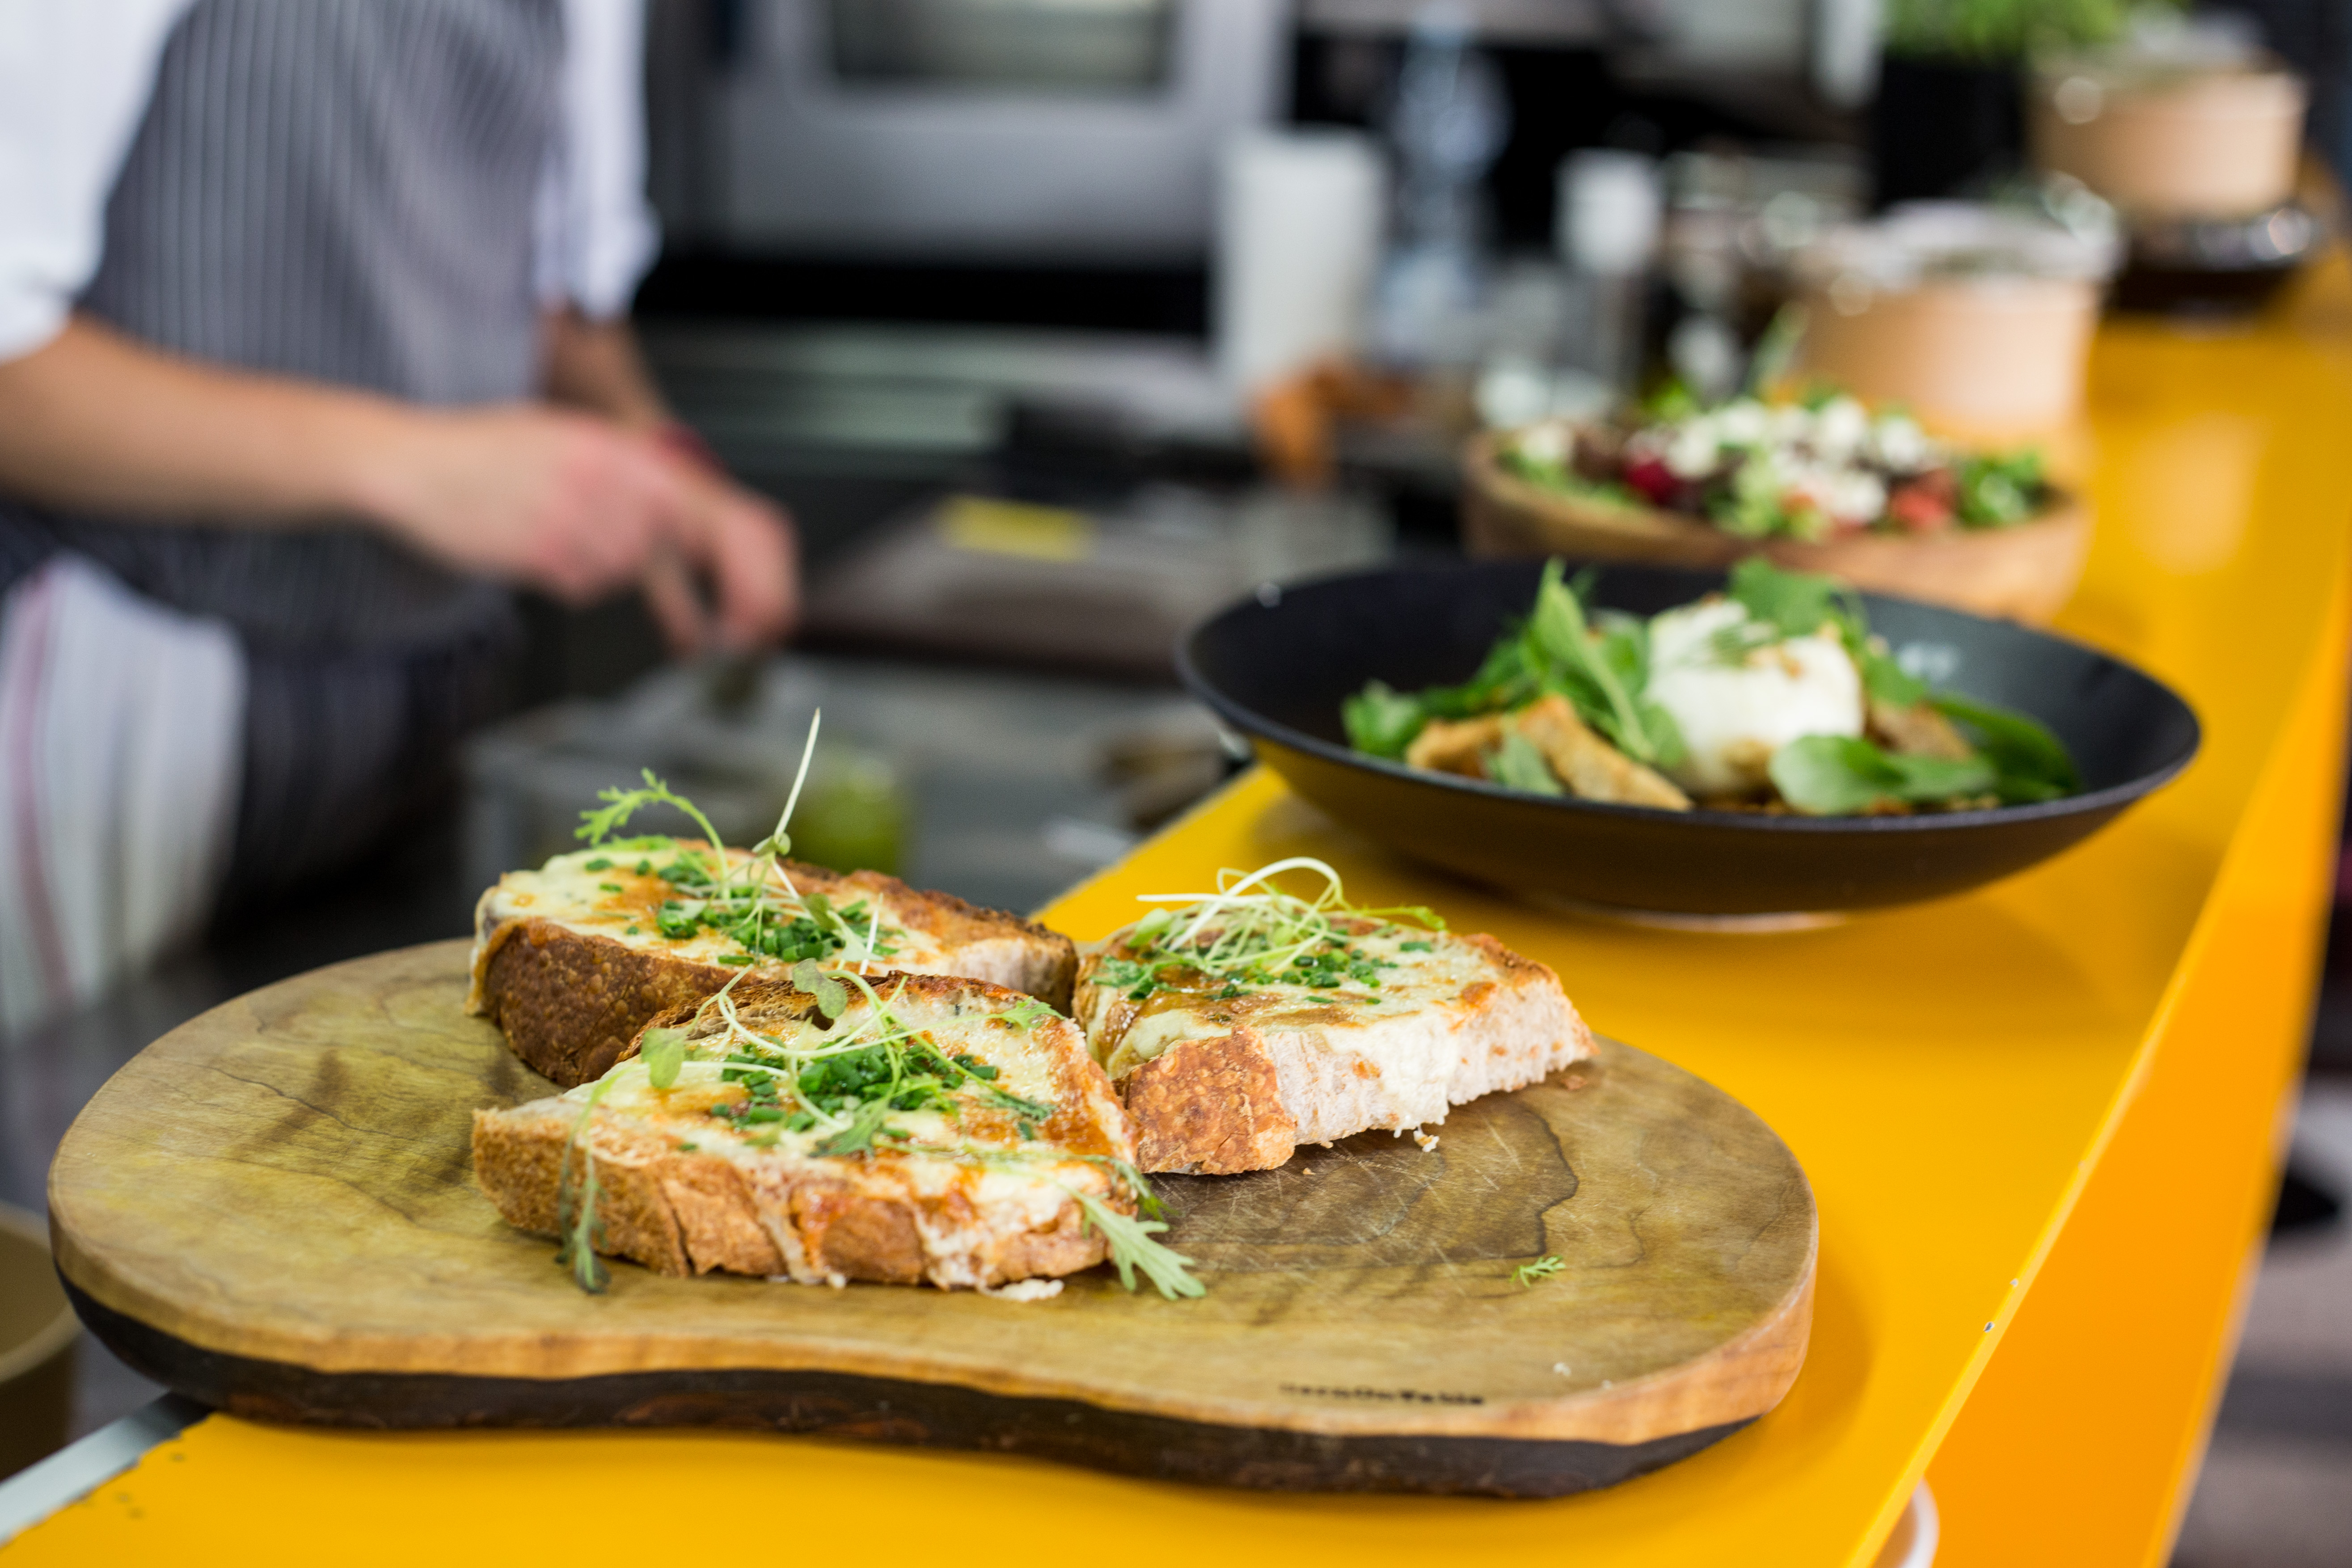 Na drewnianej desce, na barze w restauracji, leżą trzy grillowane kanapki z pesto. W tle widać inne dania w talerzach i kucharza, który przygotowuje inne danie.